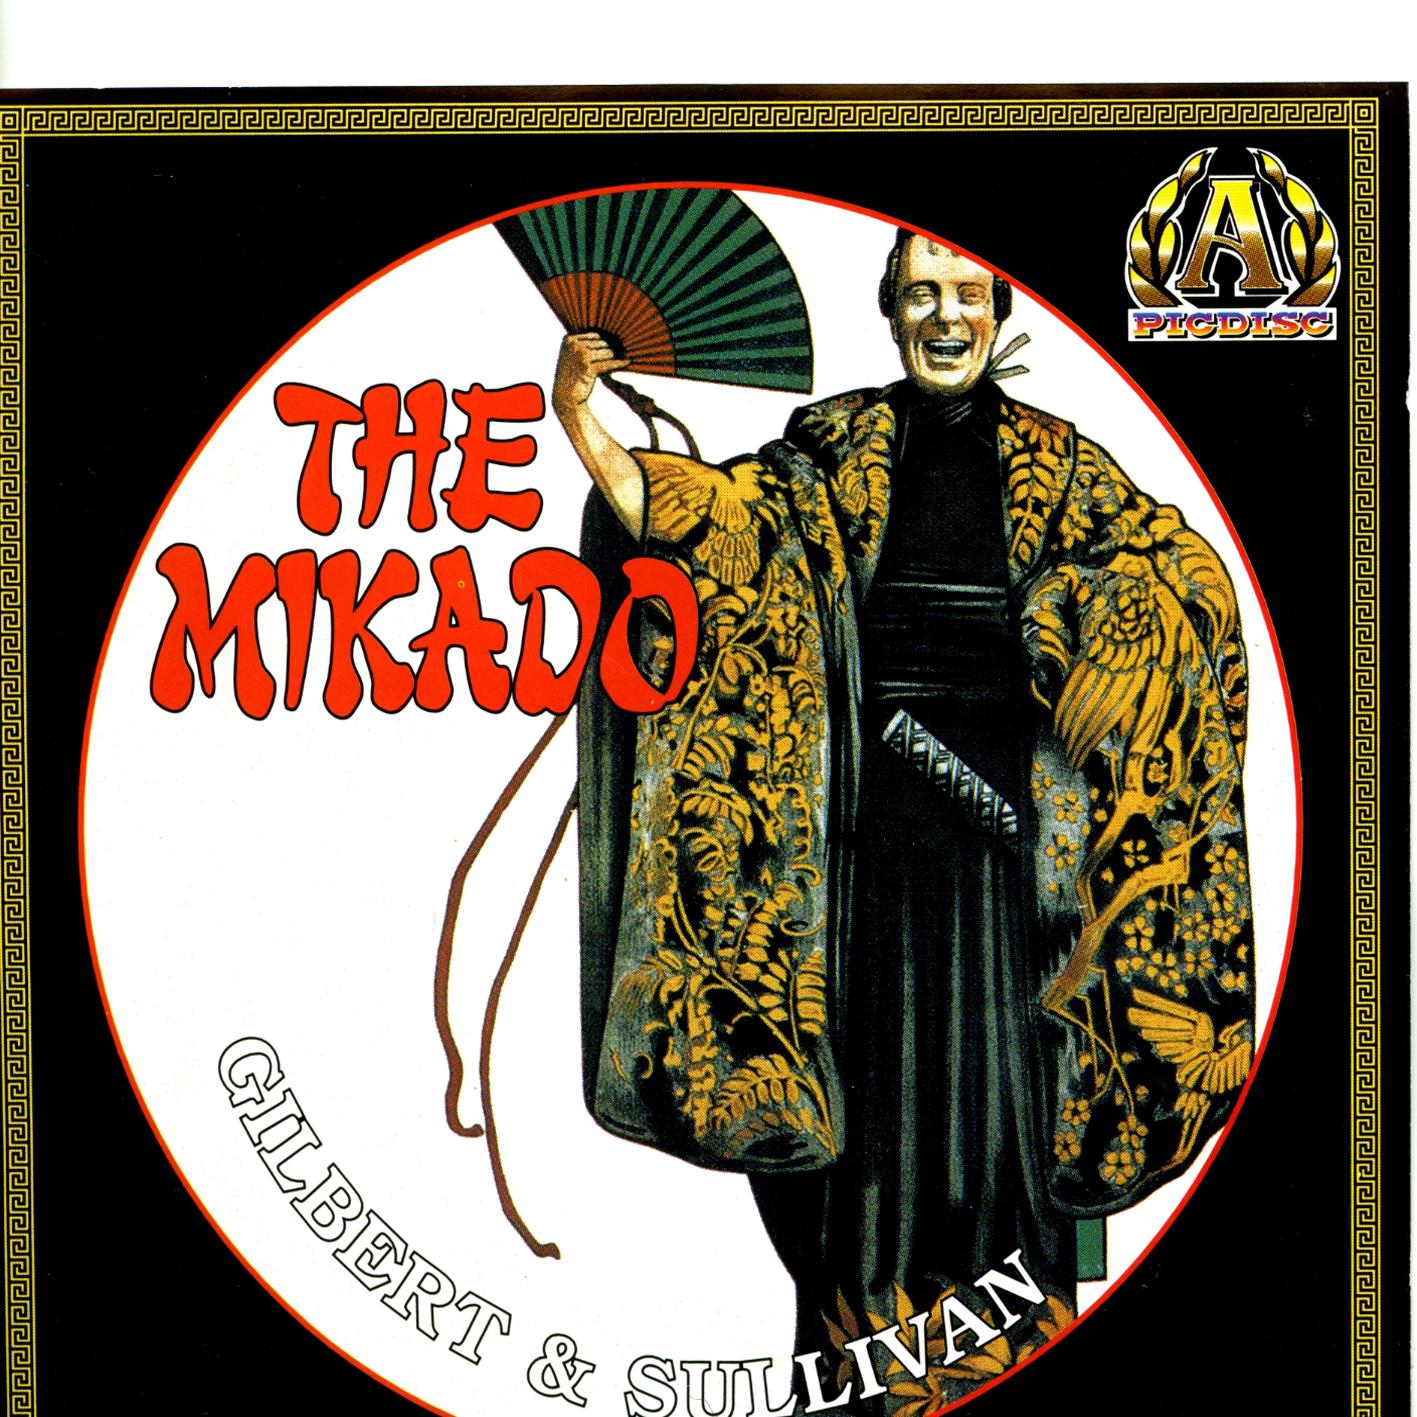 Gilbert & Sullivan: The Mikado